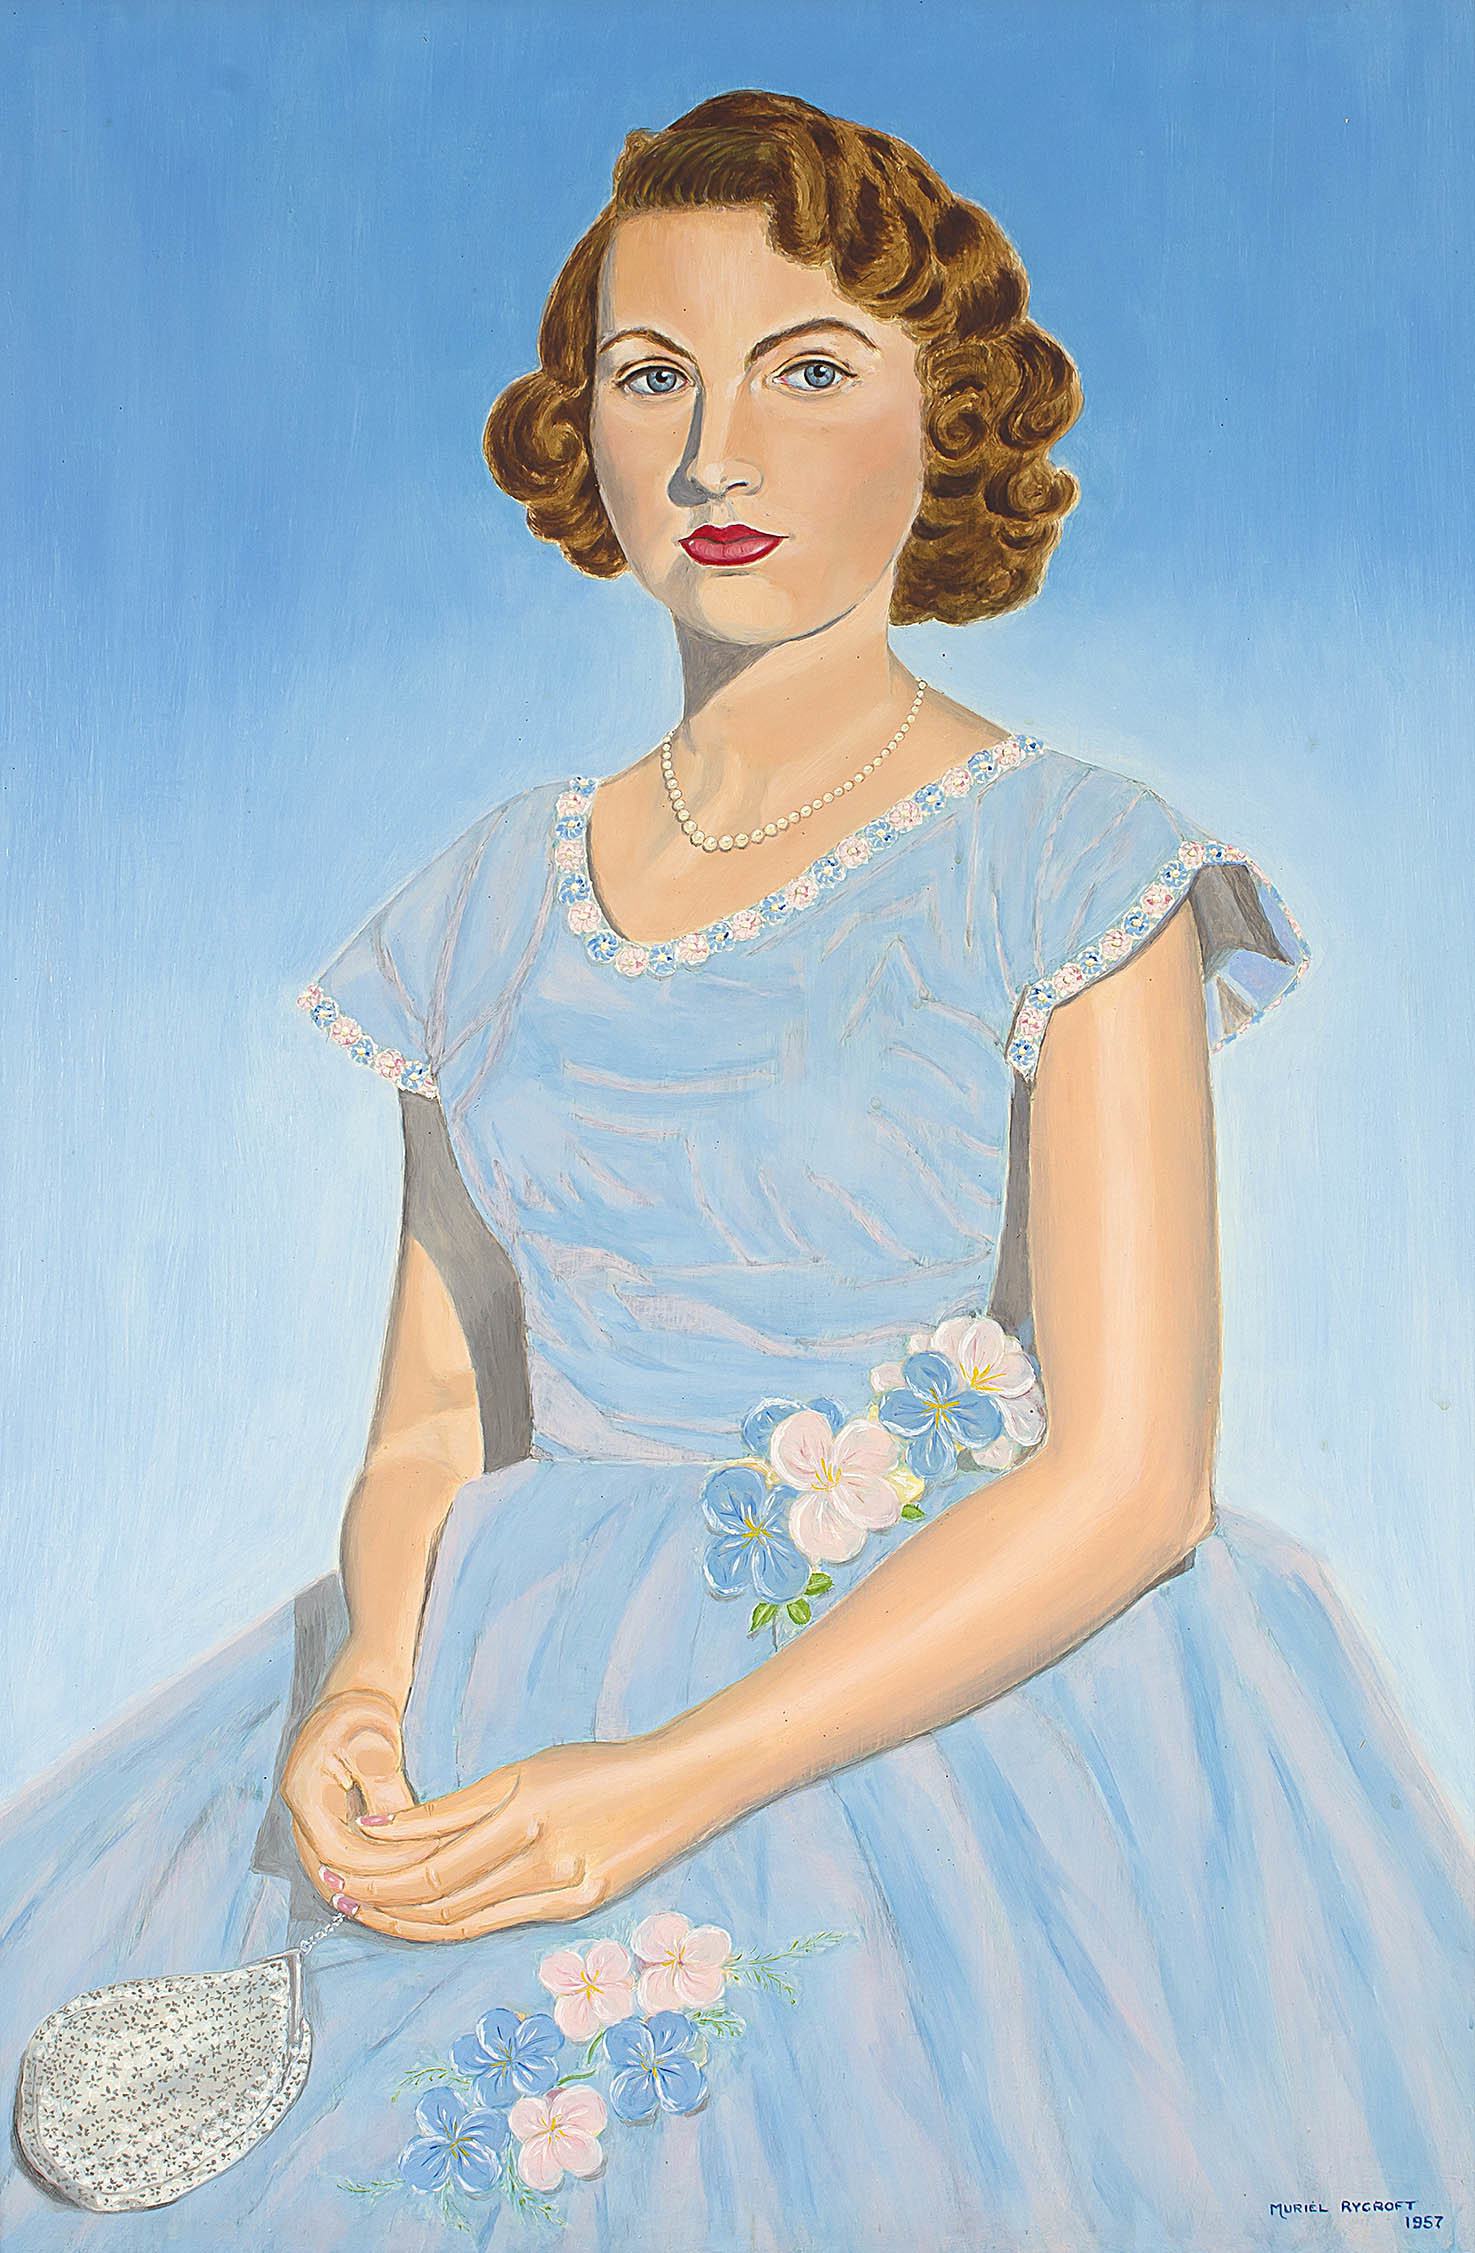 Muriel Rycroft; Girl in a Blue Frock